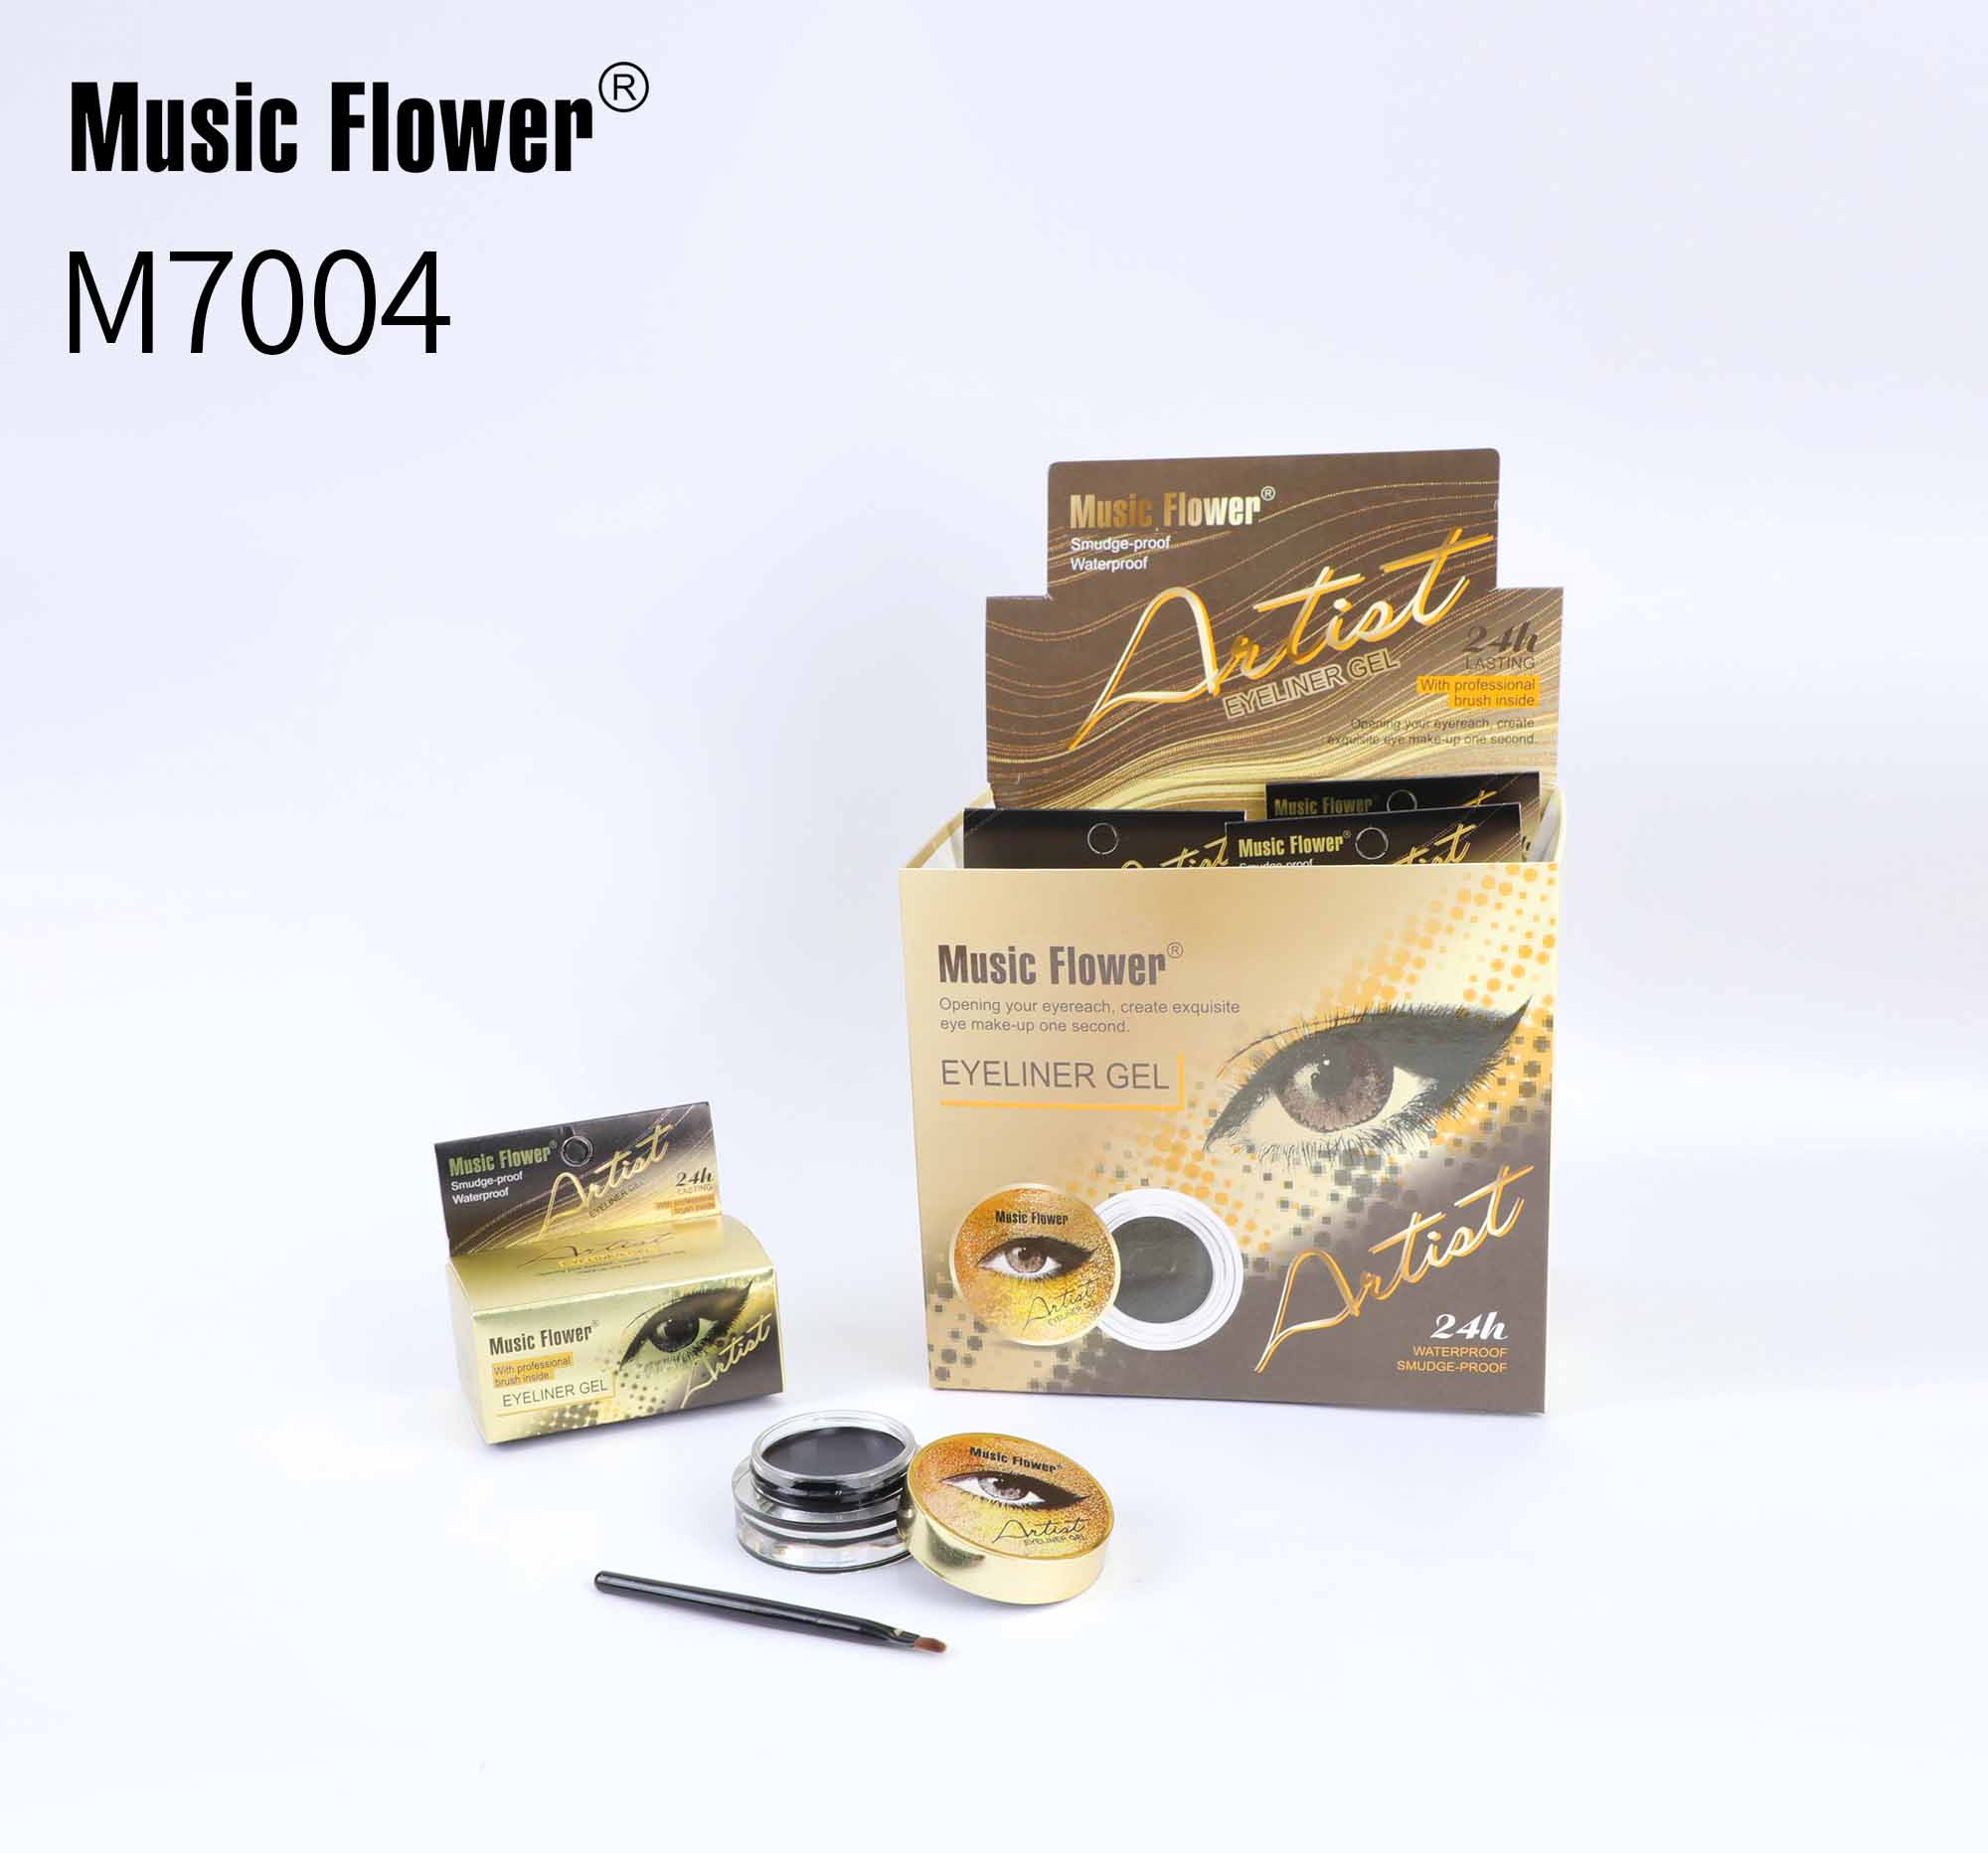 MUSIC FLOWER EYELINER GEL M7004